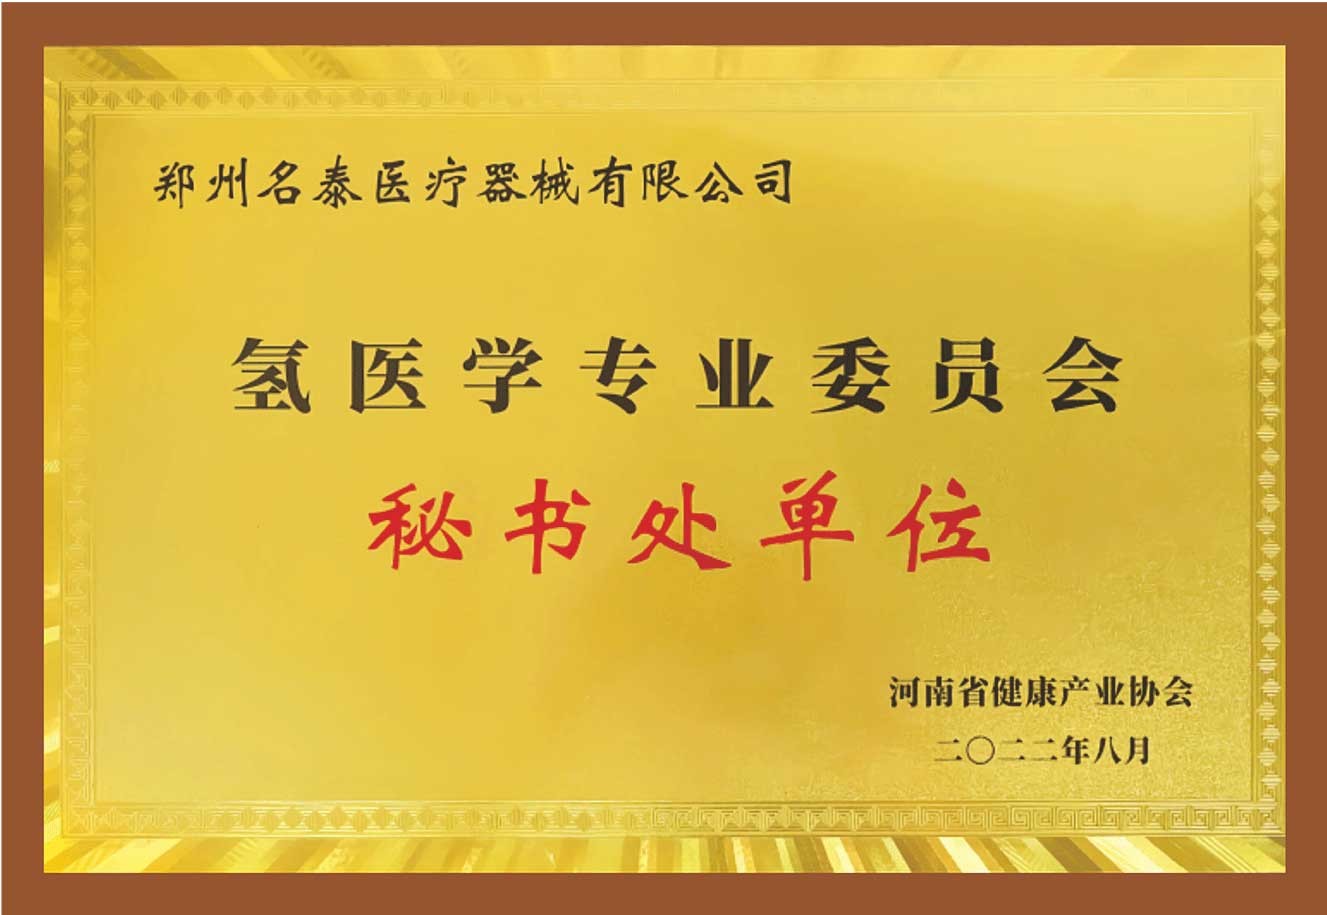 河南省氢医学专业委员会秘书处单位